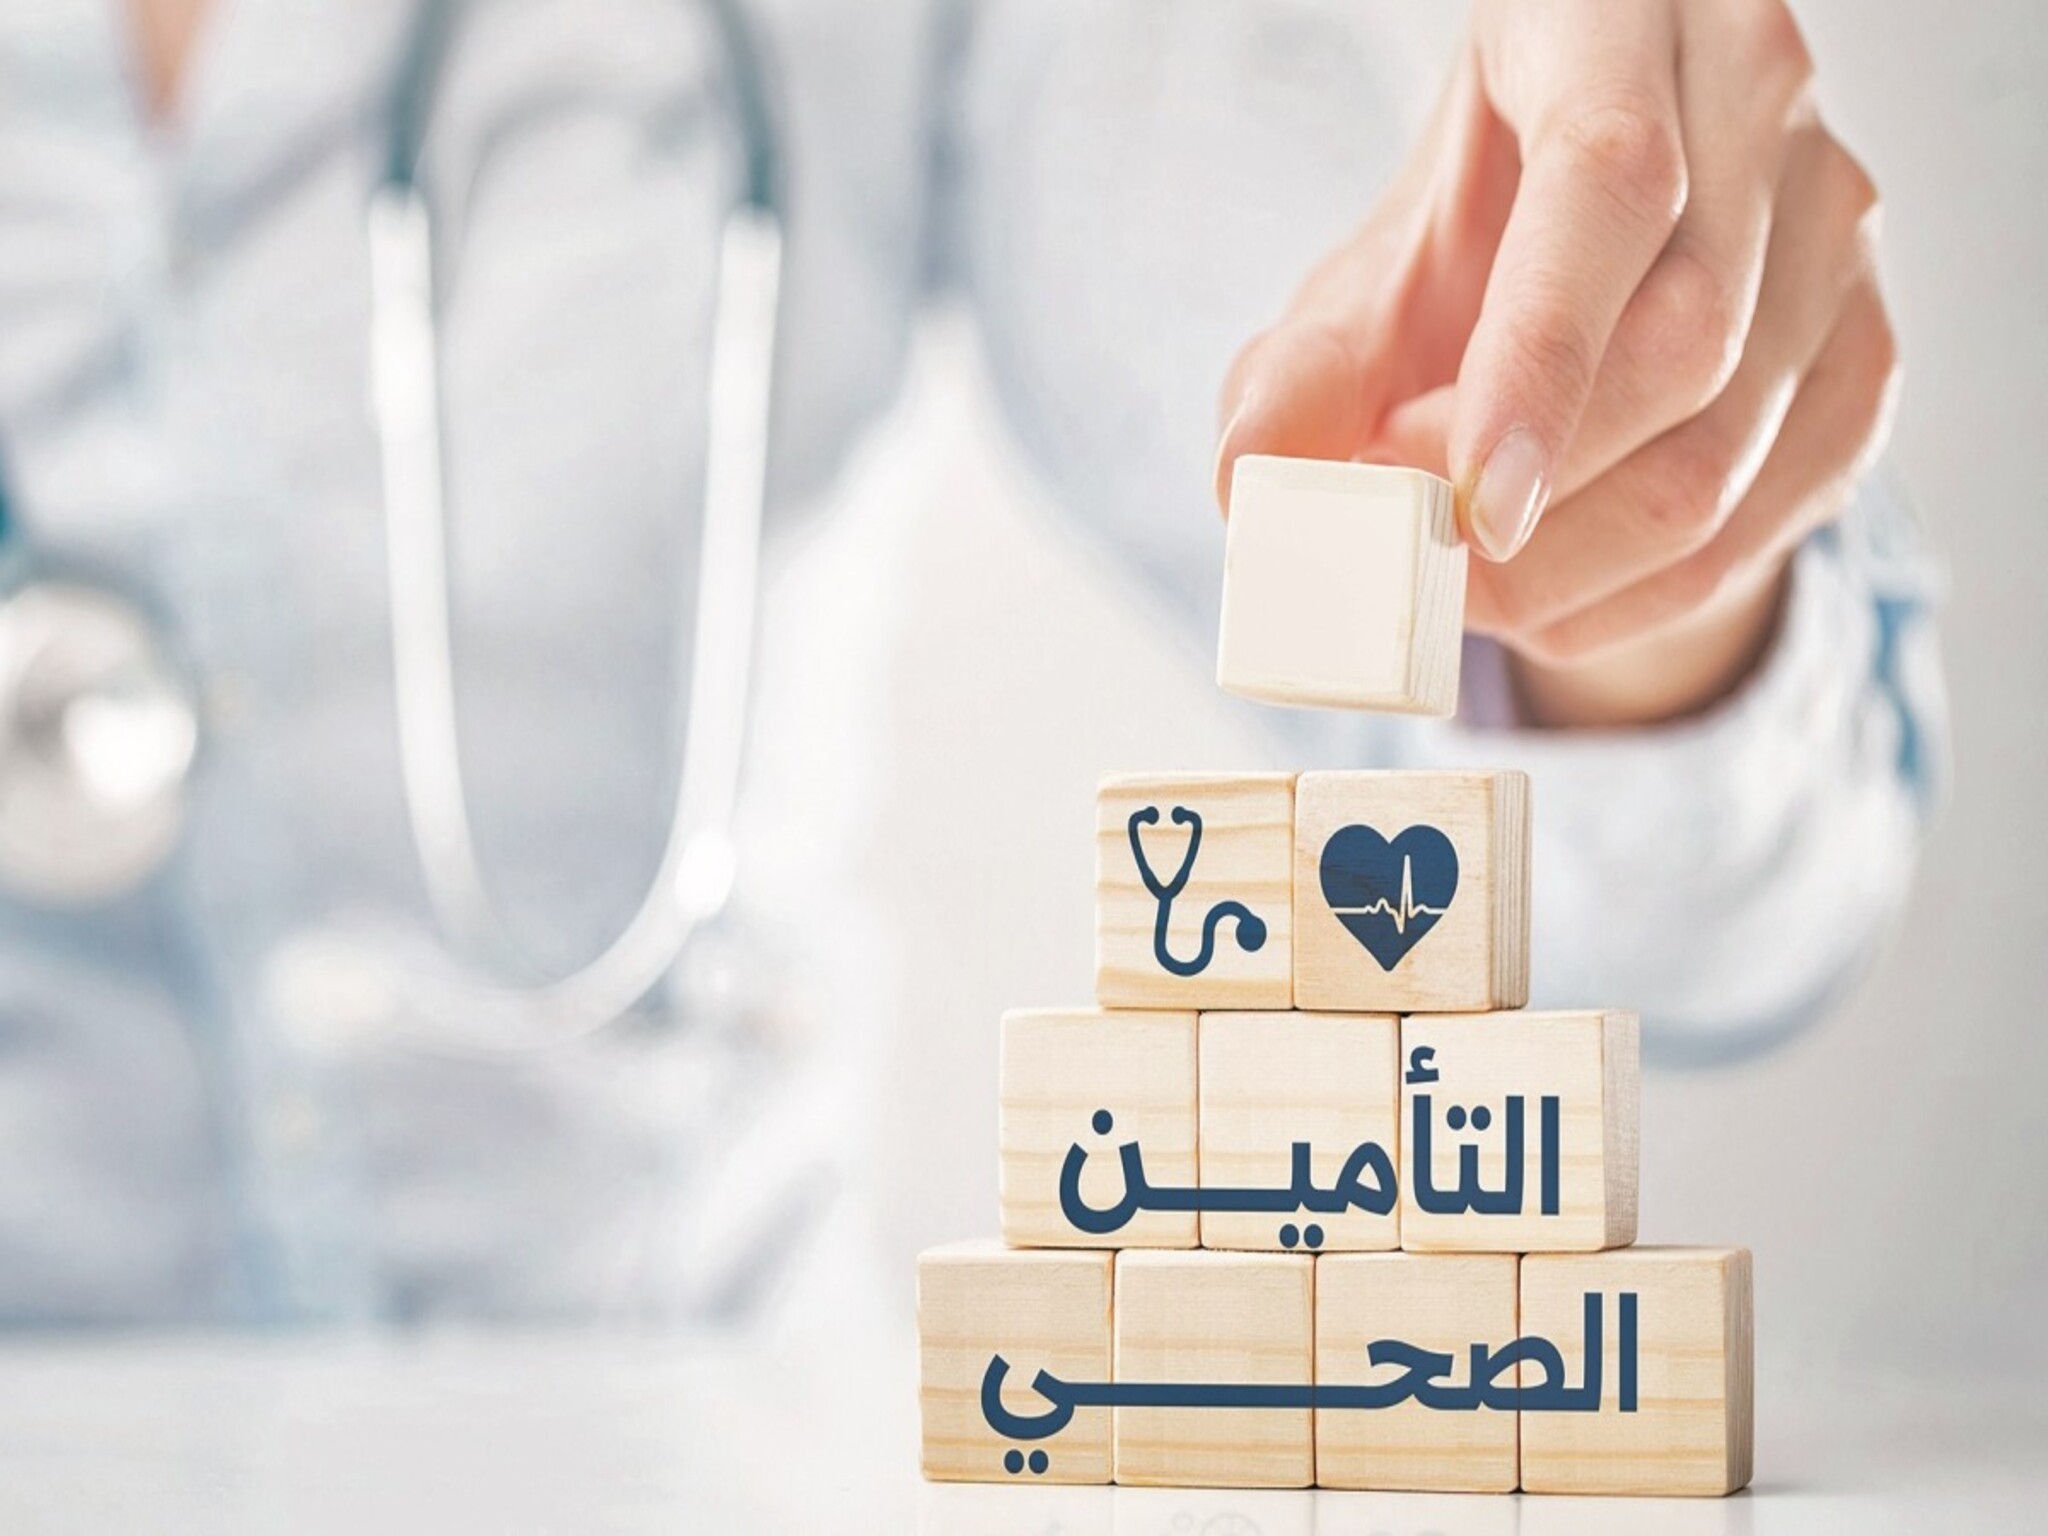  التأمين الصحي في المملكة العربية السعودية 1445هـ والفئات المستحقة